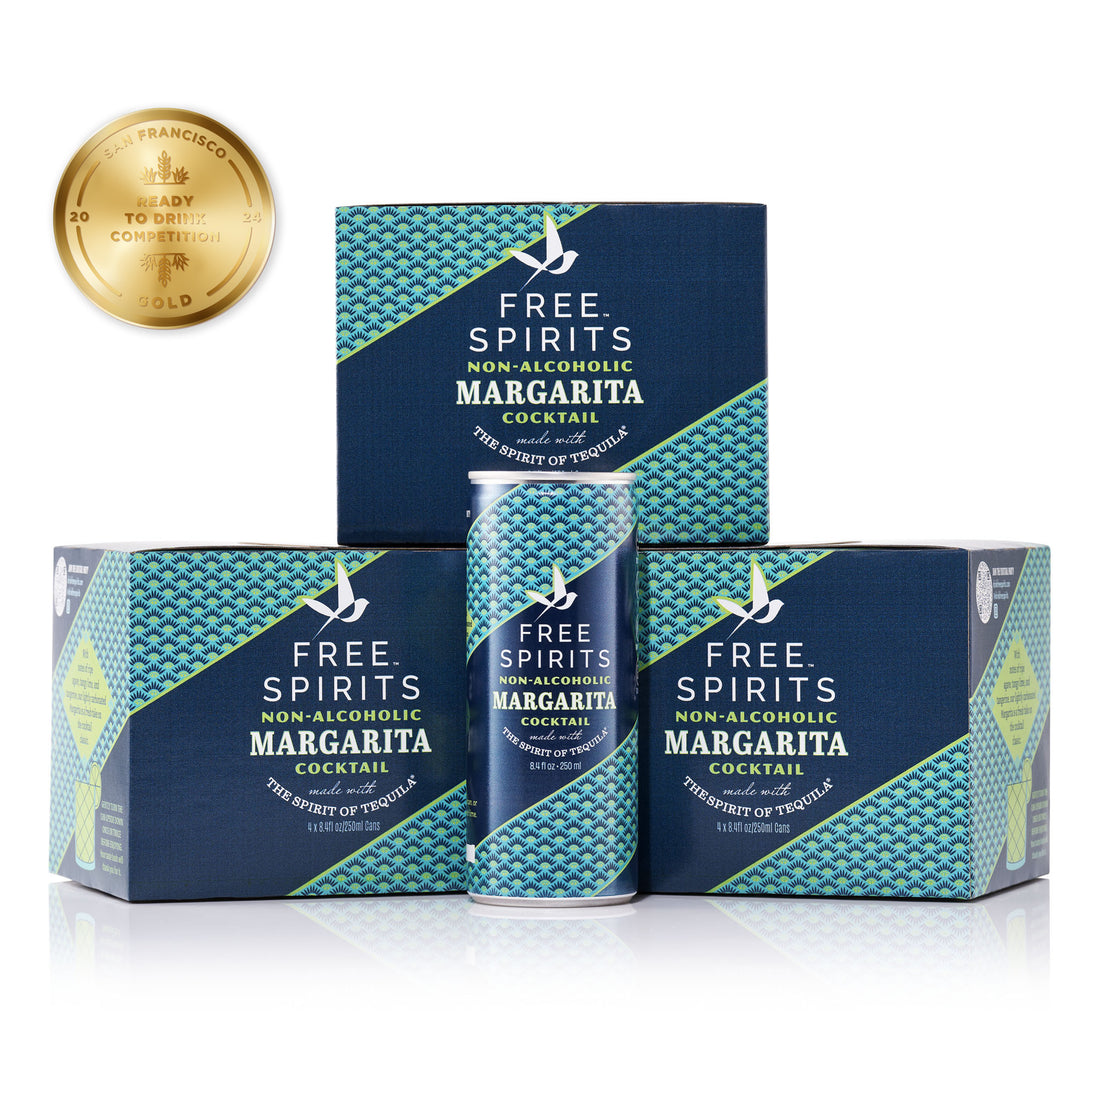 Free Spirits NA Margarita - Gold Medal Winning